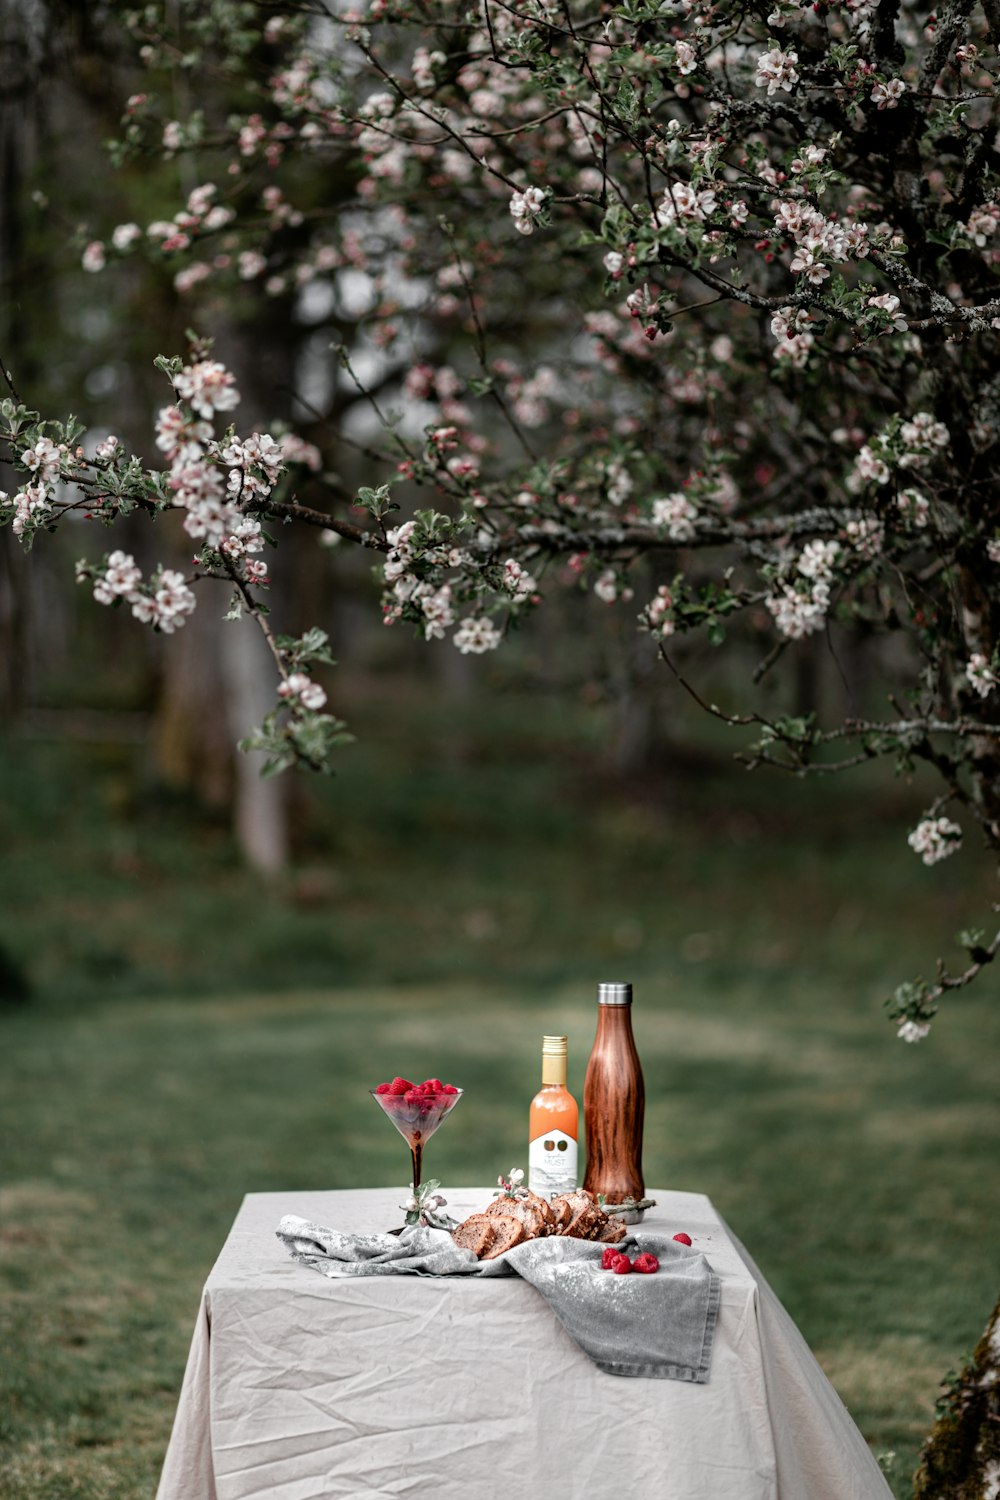 갈색 나무 테이블에 흰 꽃